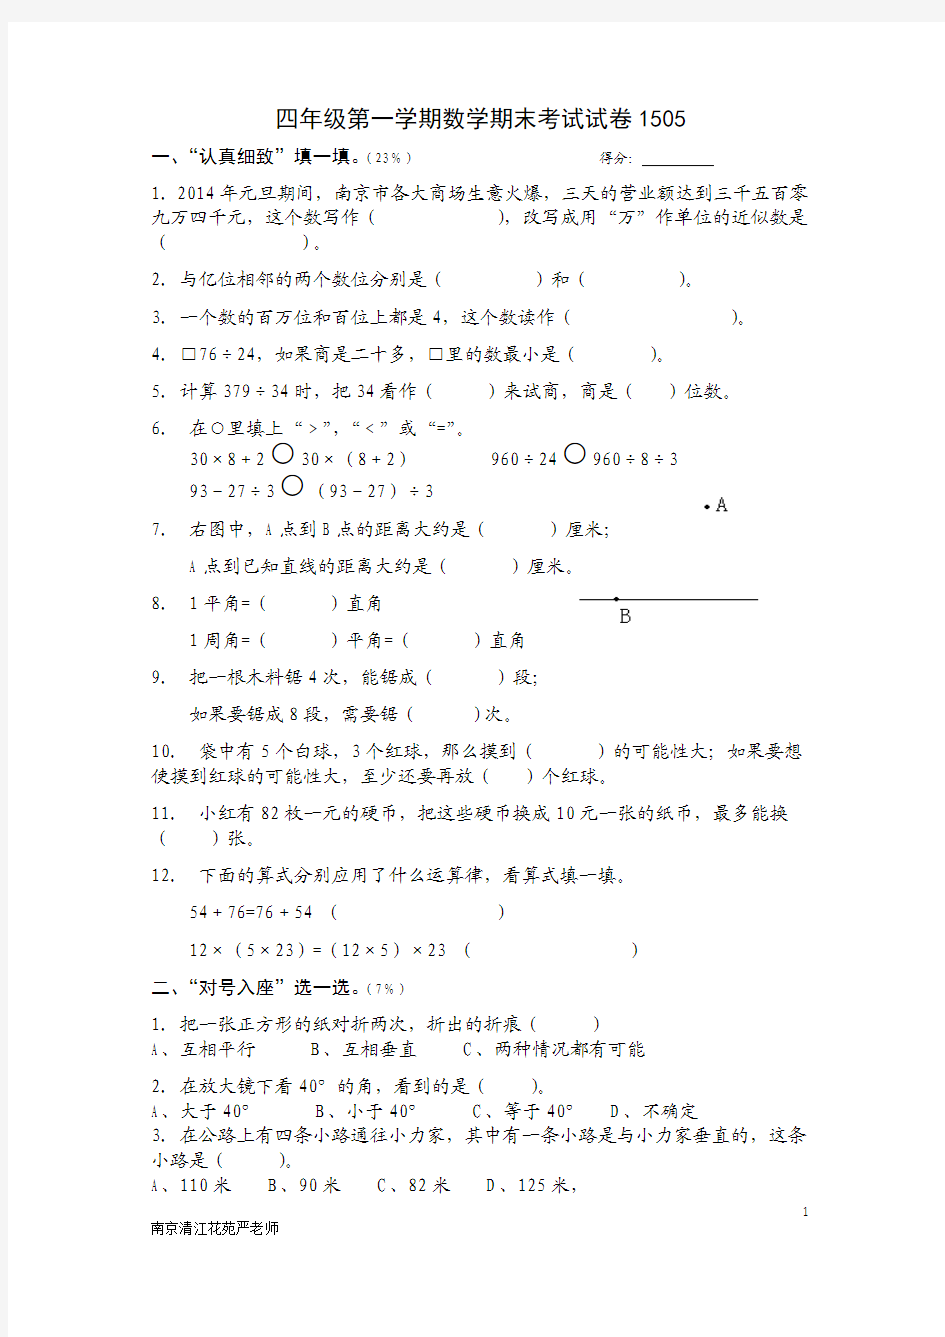 南京清江花苑严老师四年级第一学期数学期末考试试卷1505